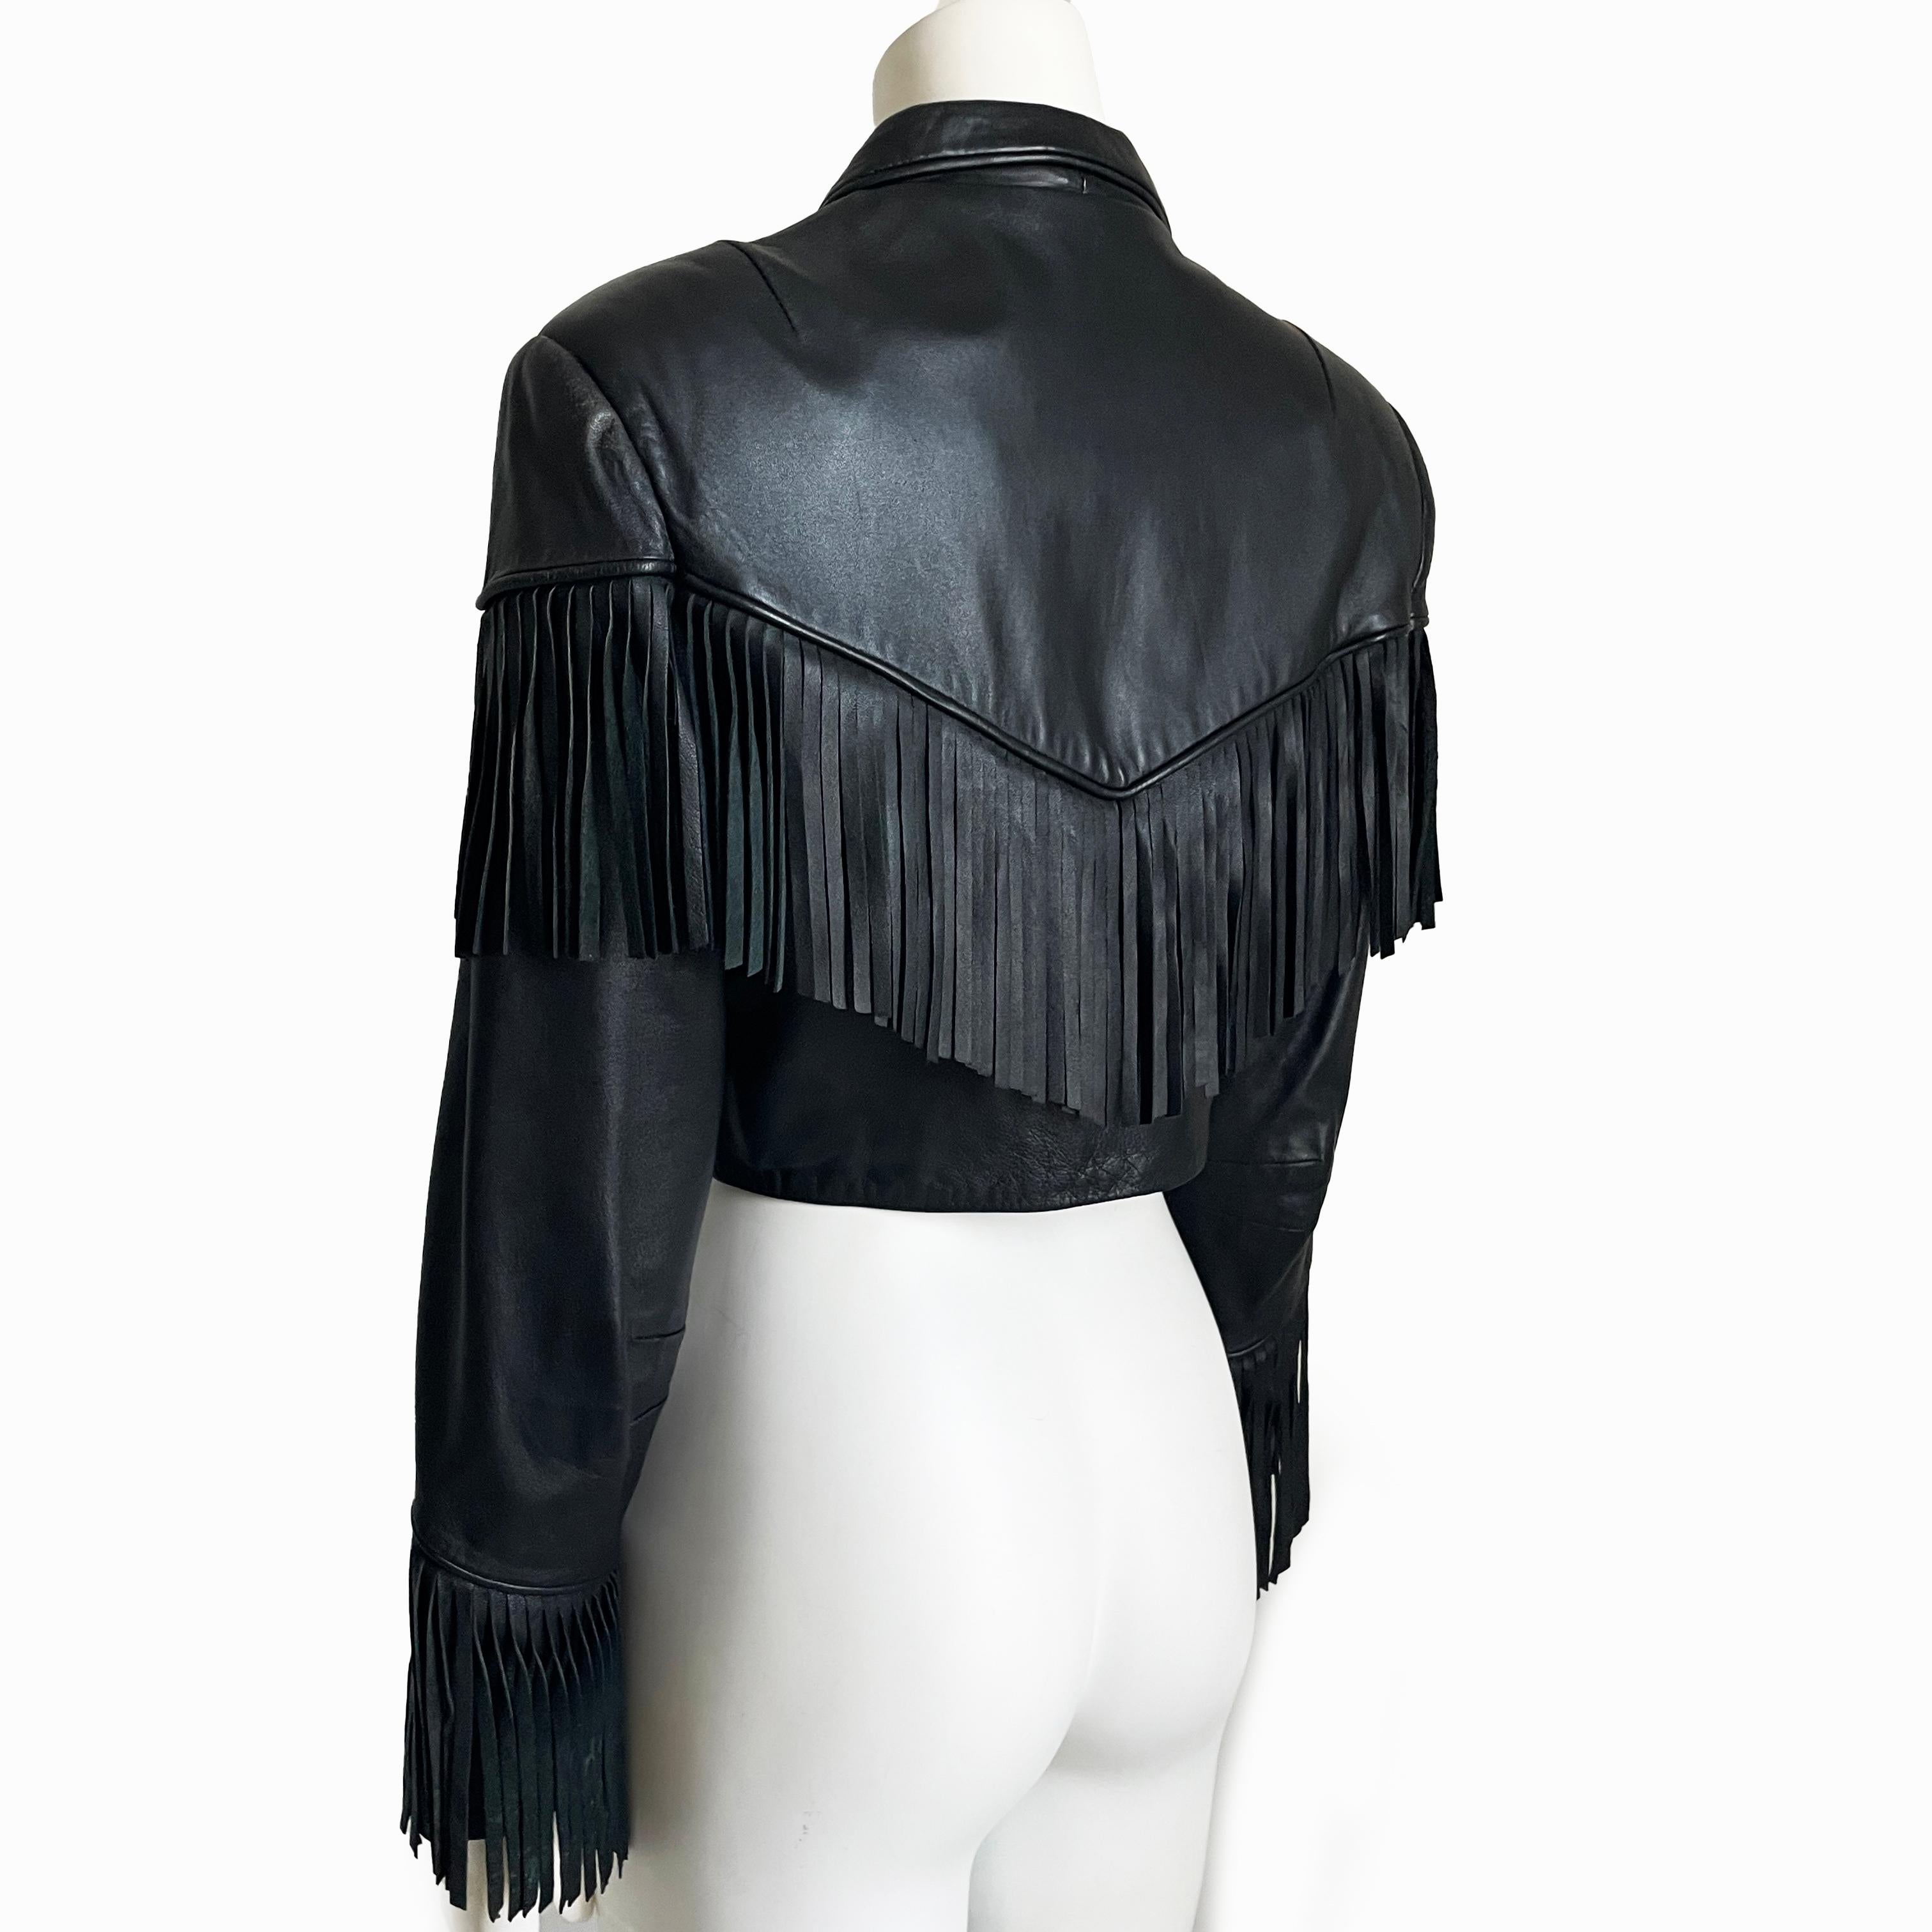 Norma Kamali Leather Jacket Black Cropped Fringe Vintage 1990s Rare Rocker Chic For Sale 4